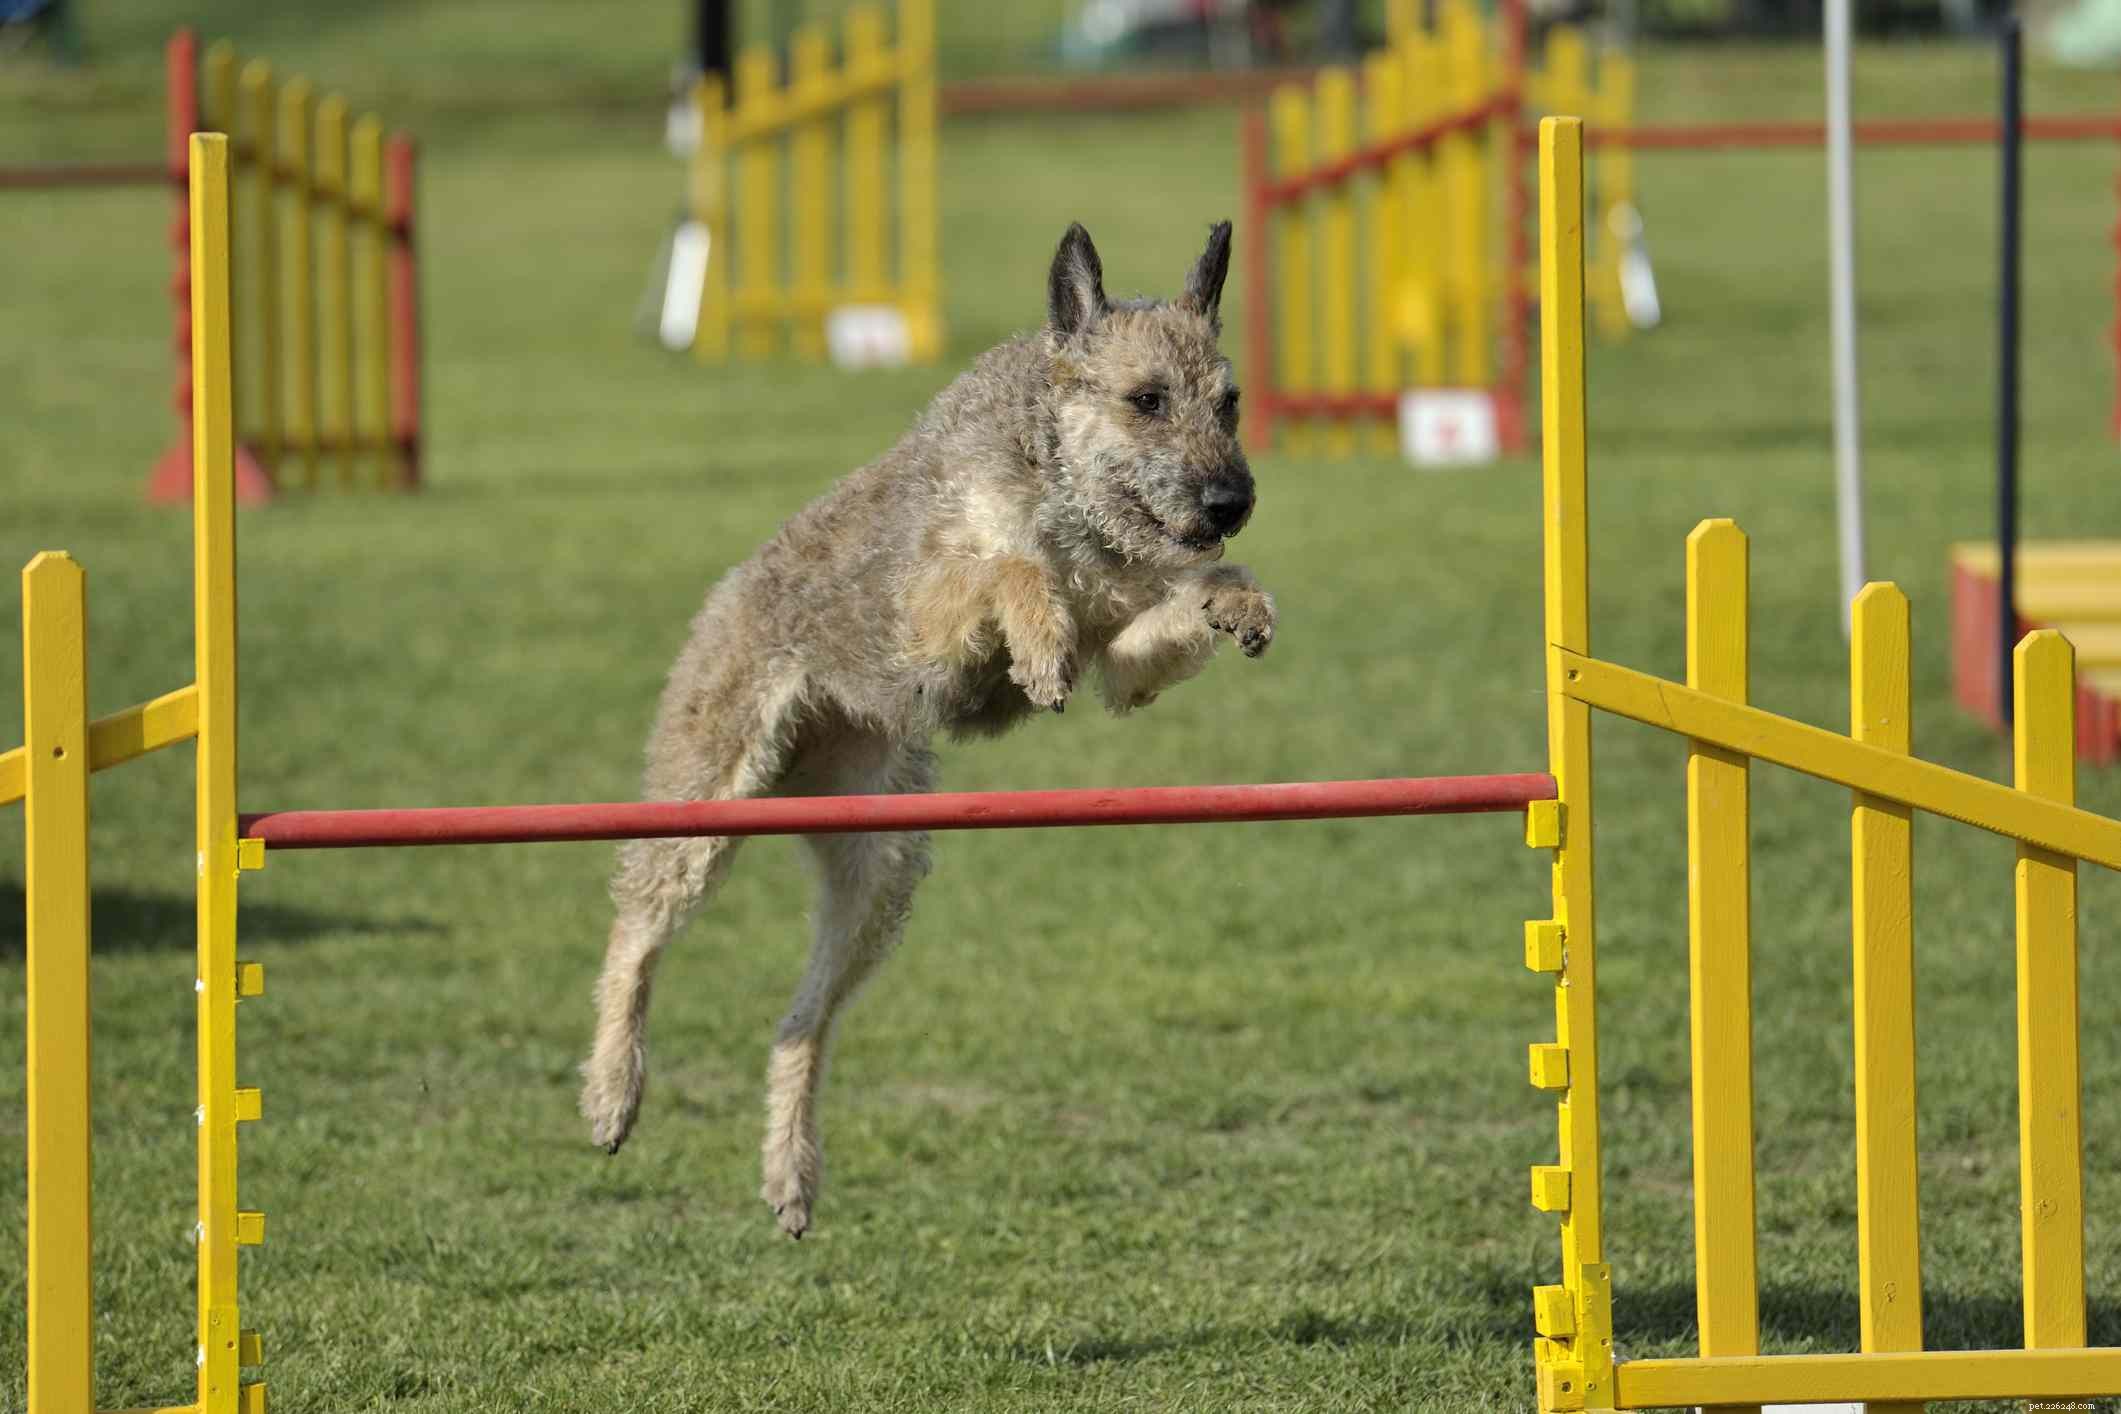 Laekenois belge :profil de race de chien